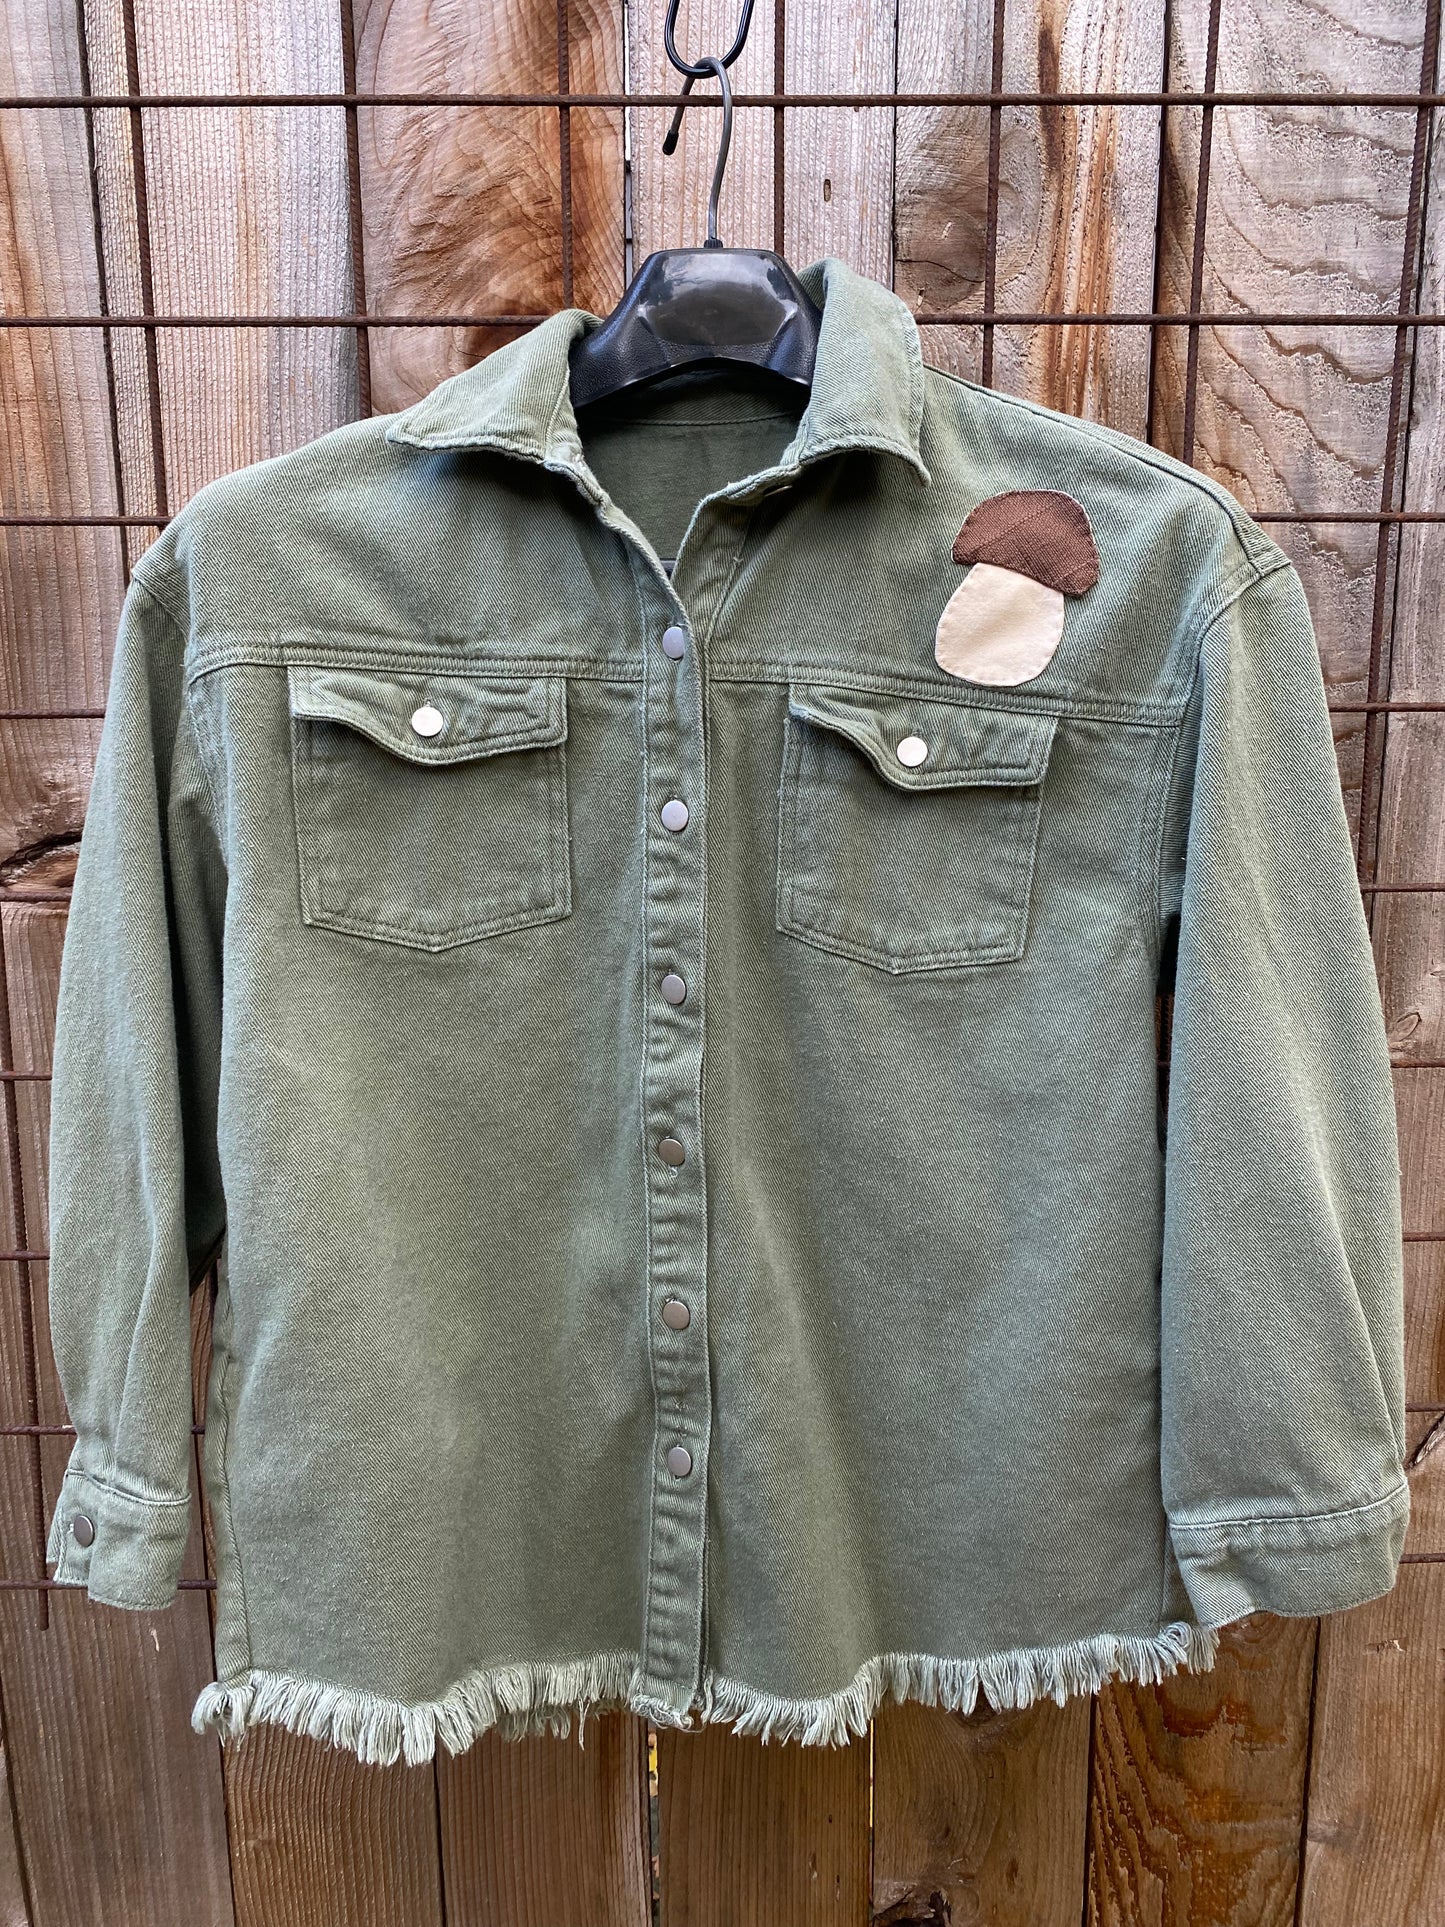 Bolete - Sage Green Jacket with Pockets - Large